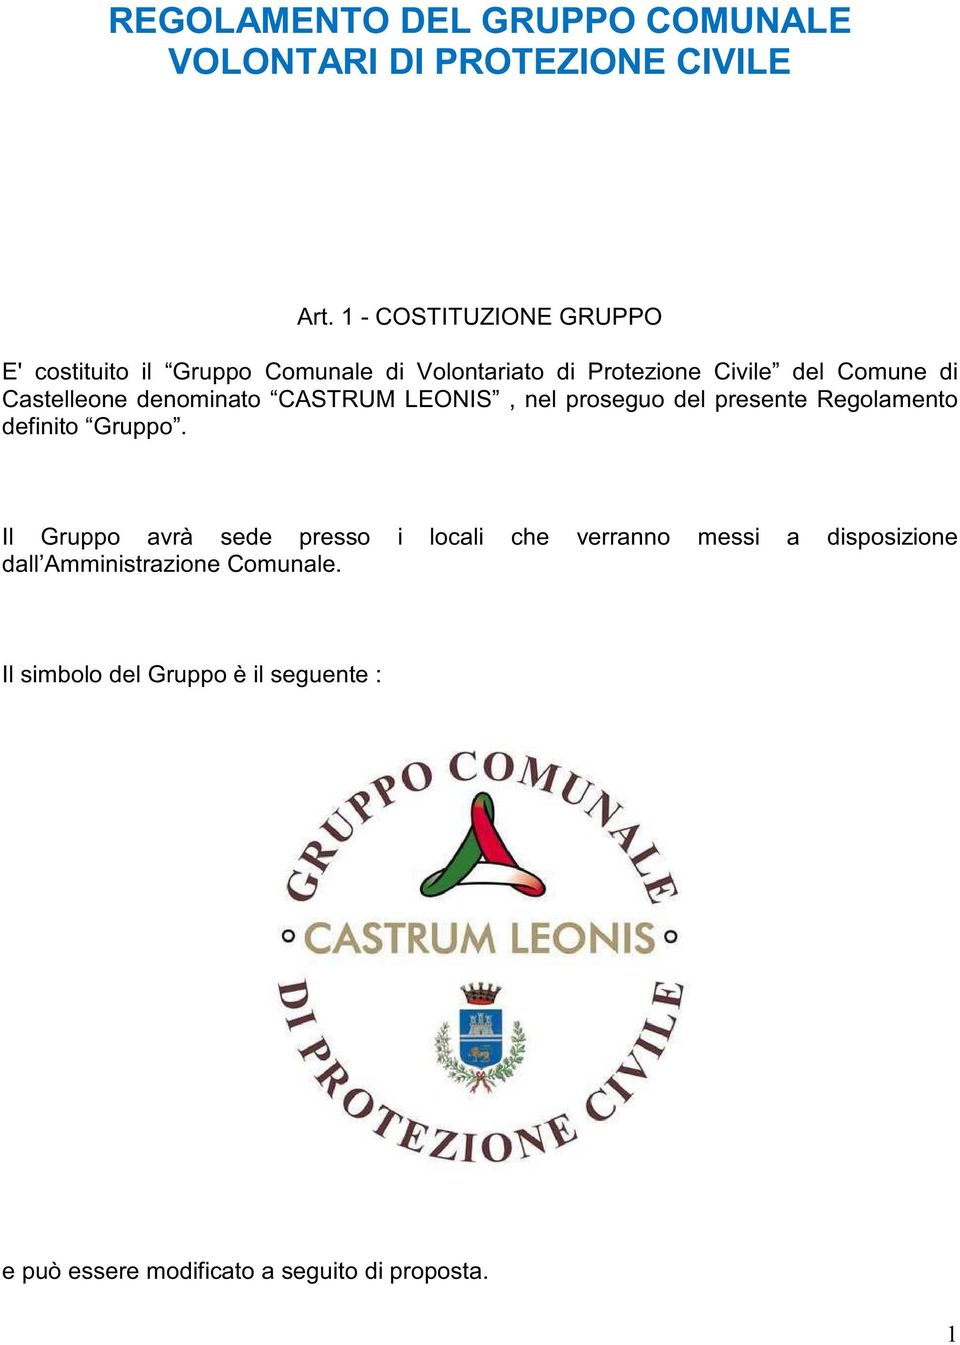 Castelleone denominato CASTRUM LEONIS, nel proseguo del presente Regolamento definito Gruppo.